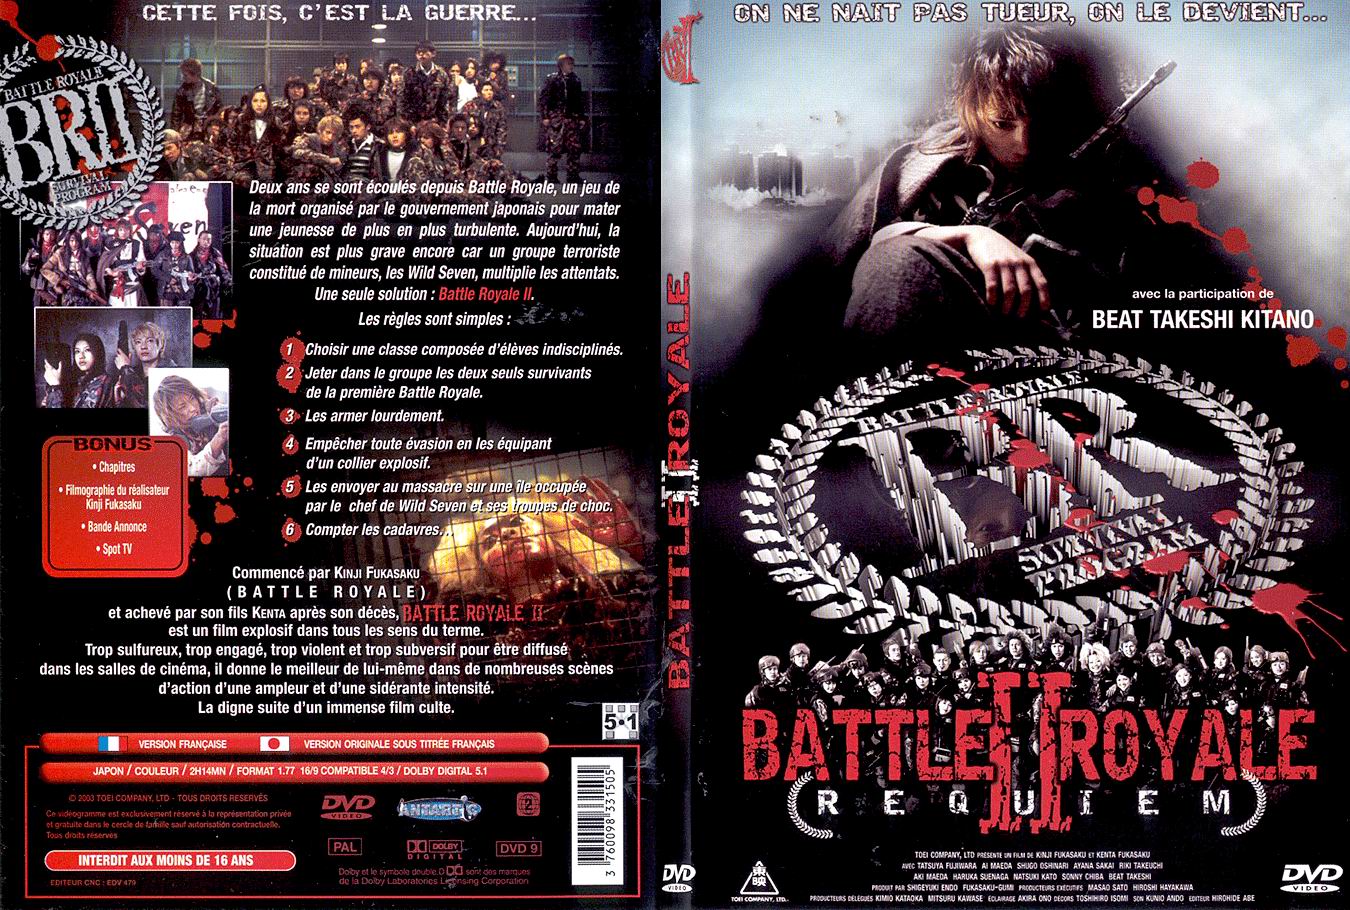 Jaquette DVD Battle royale 2 - SLIM